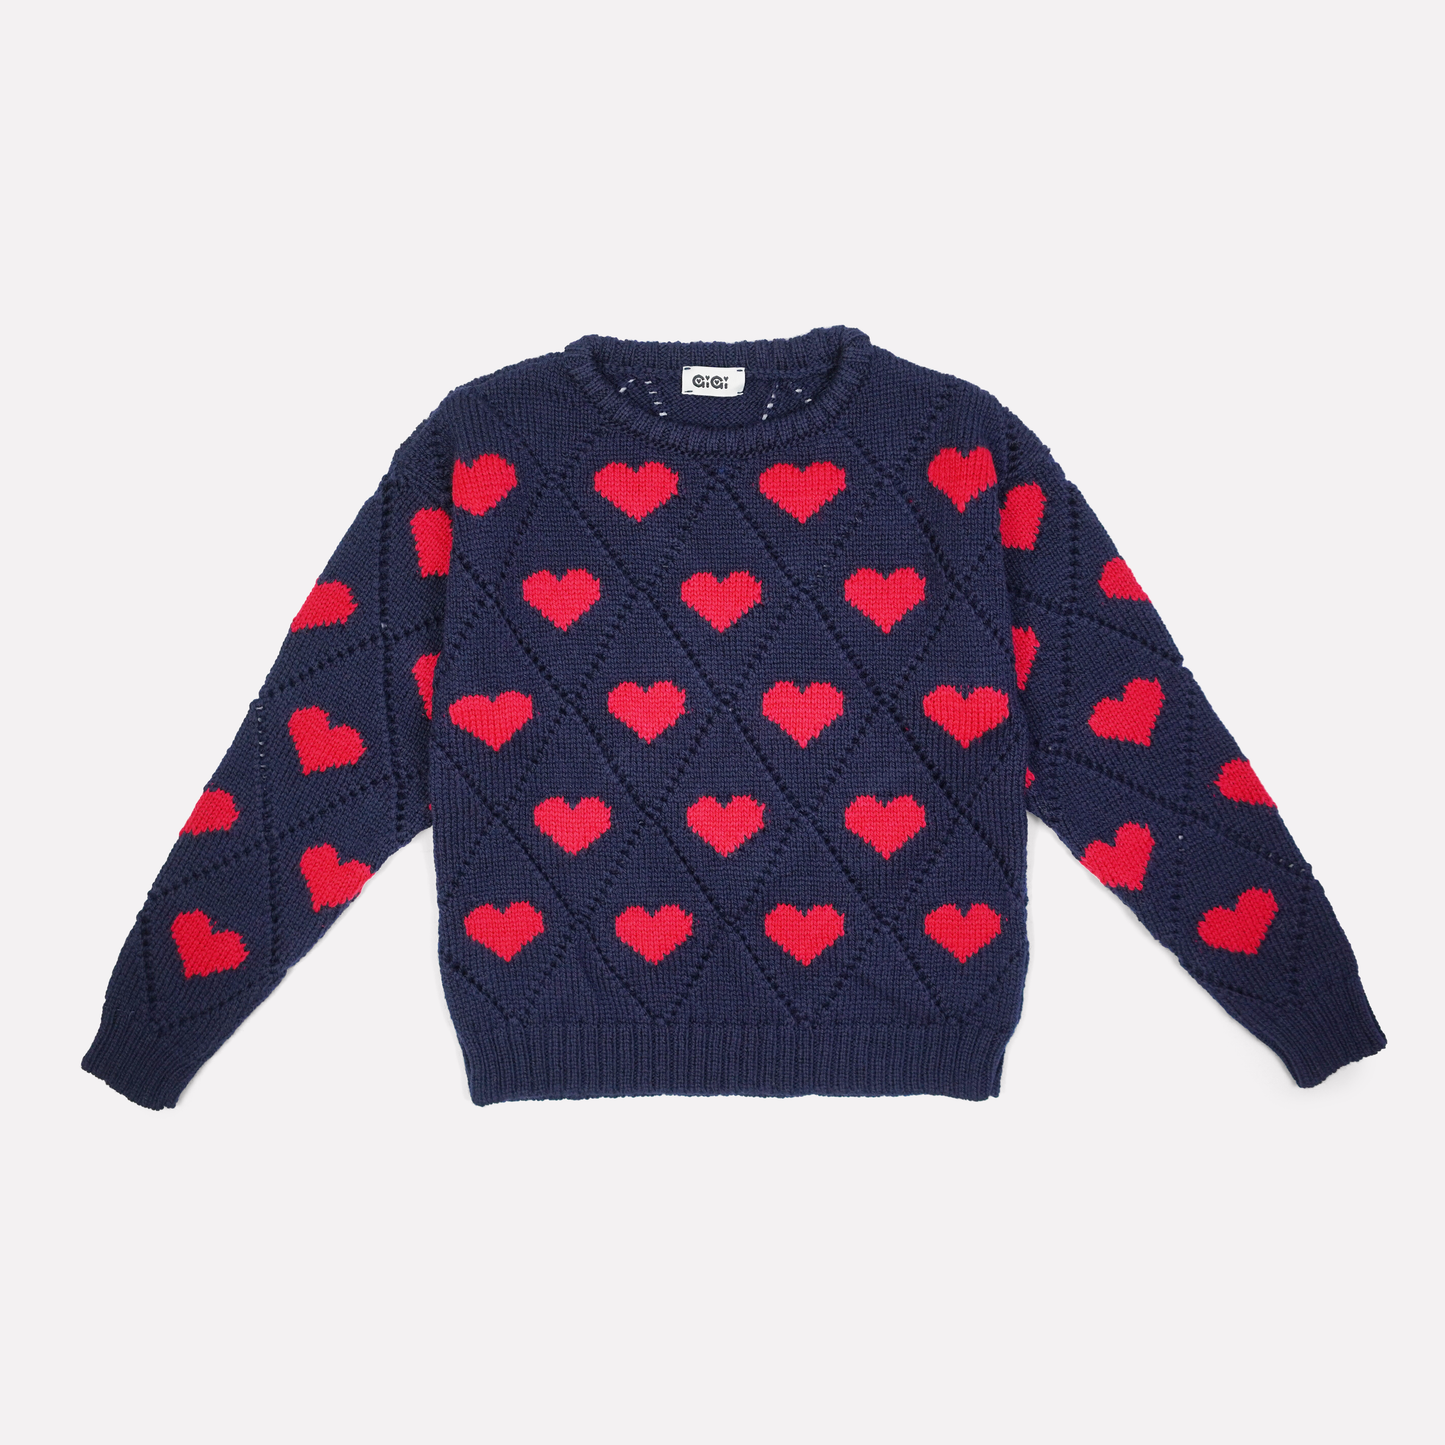 Love Sweater Mini in Navy